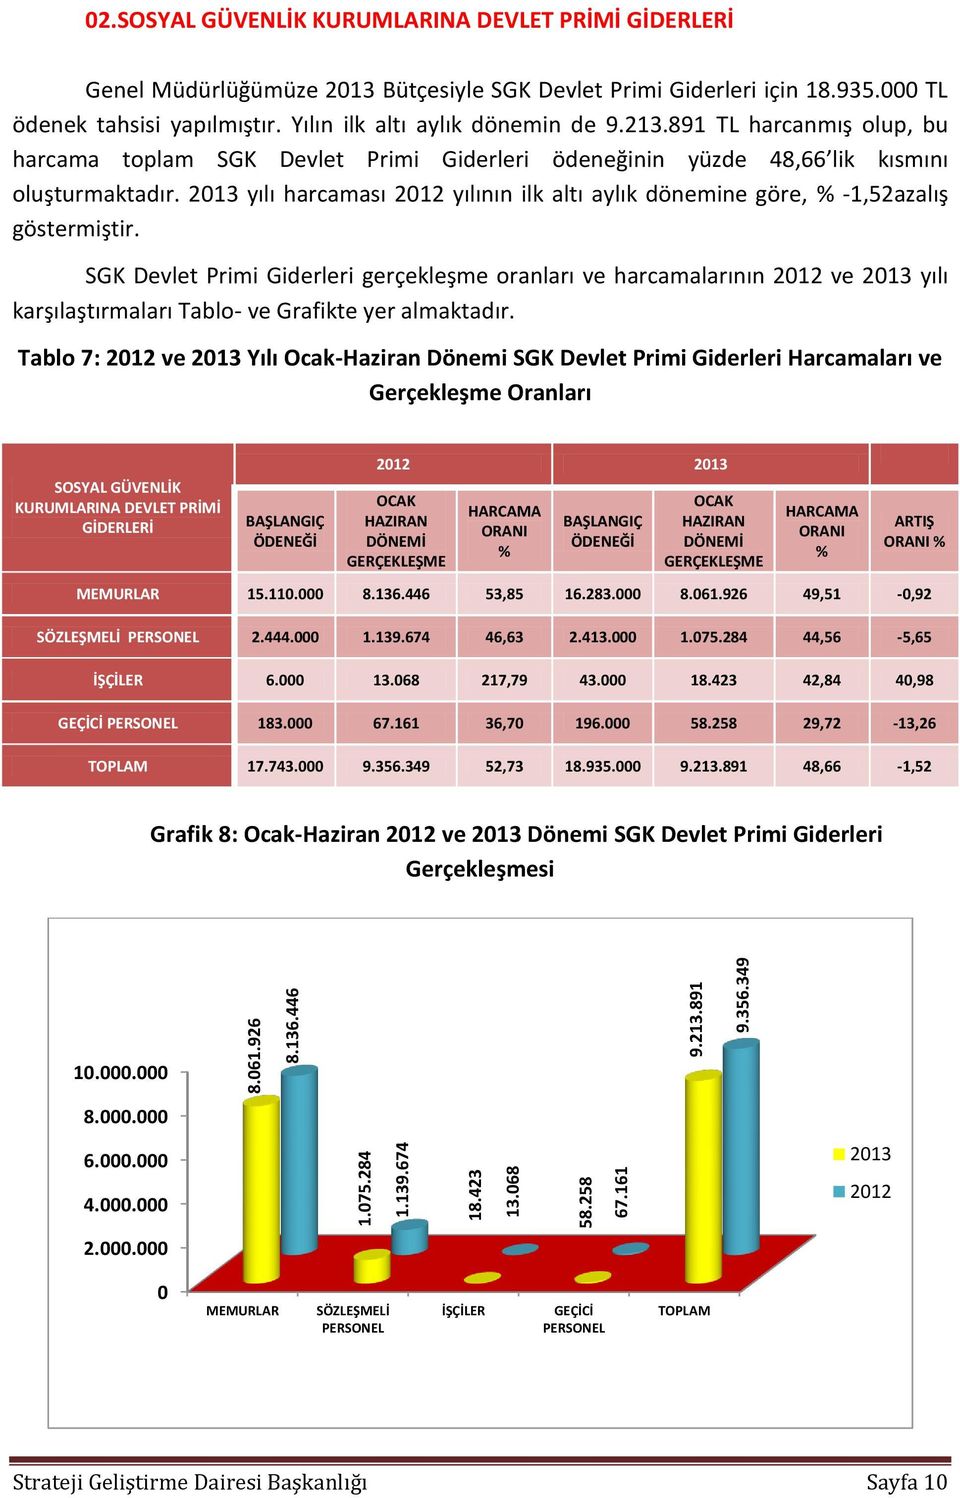 891 TL harcanmış olup, bu harcama toplam SGK Devlet Primi Giderleri ödeneğinin yüzde 48,66 lik kısmını oluşturmaktadır.